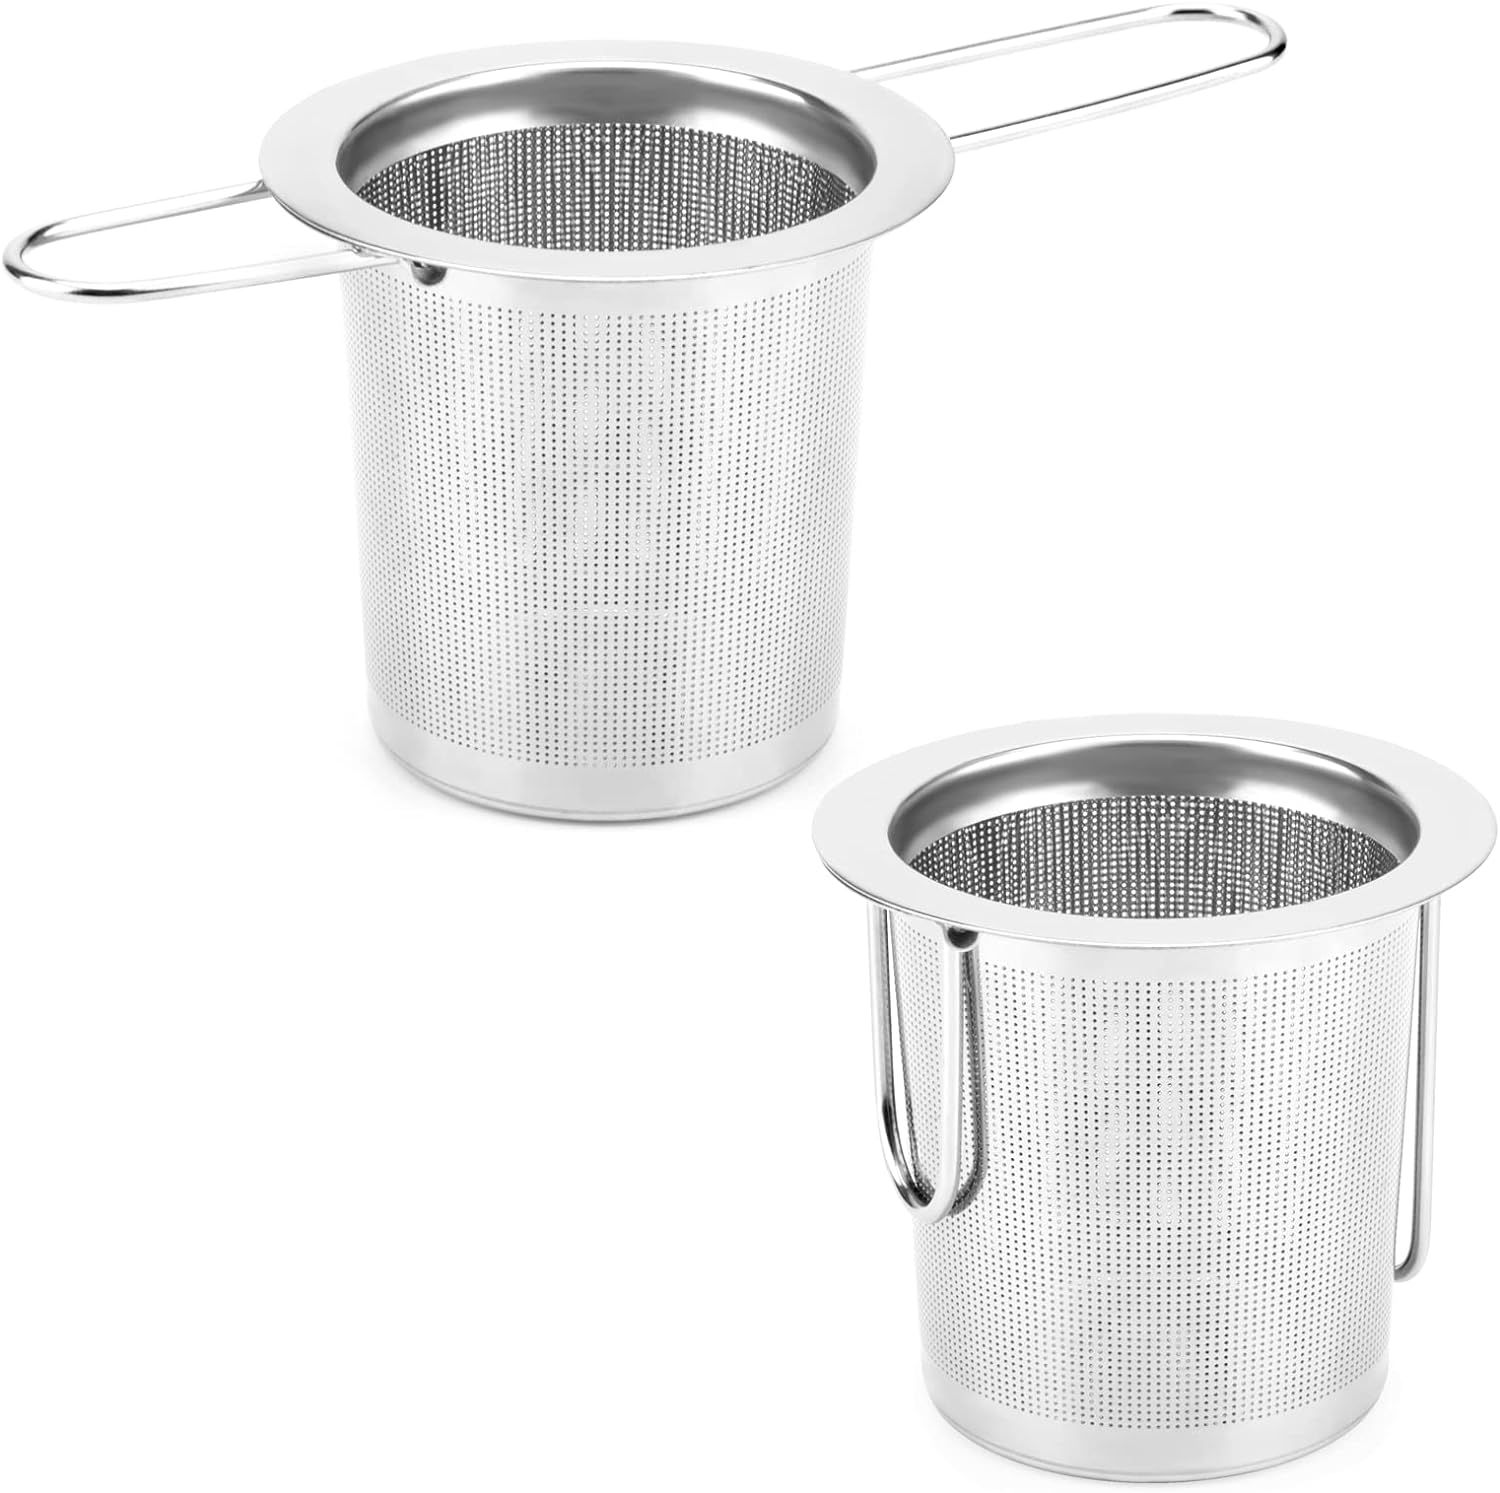 2Pack Tea Strainer, Stainless Steel Tea Infuser Basket Sitting in Mugs, Evmliy Tea Infusers for L... | Amazon (US)